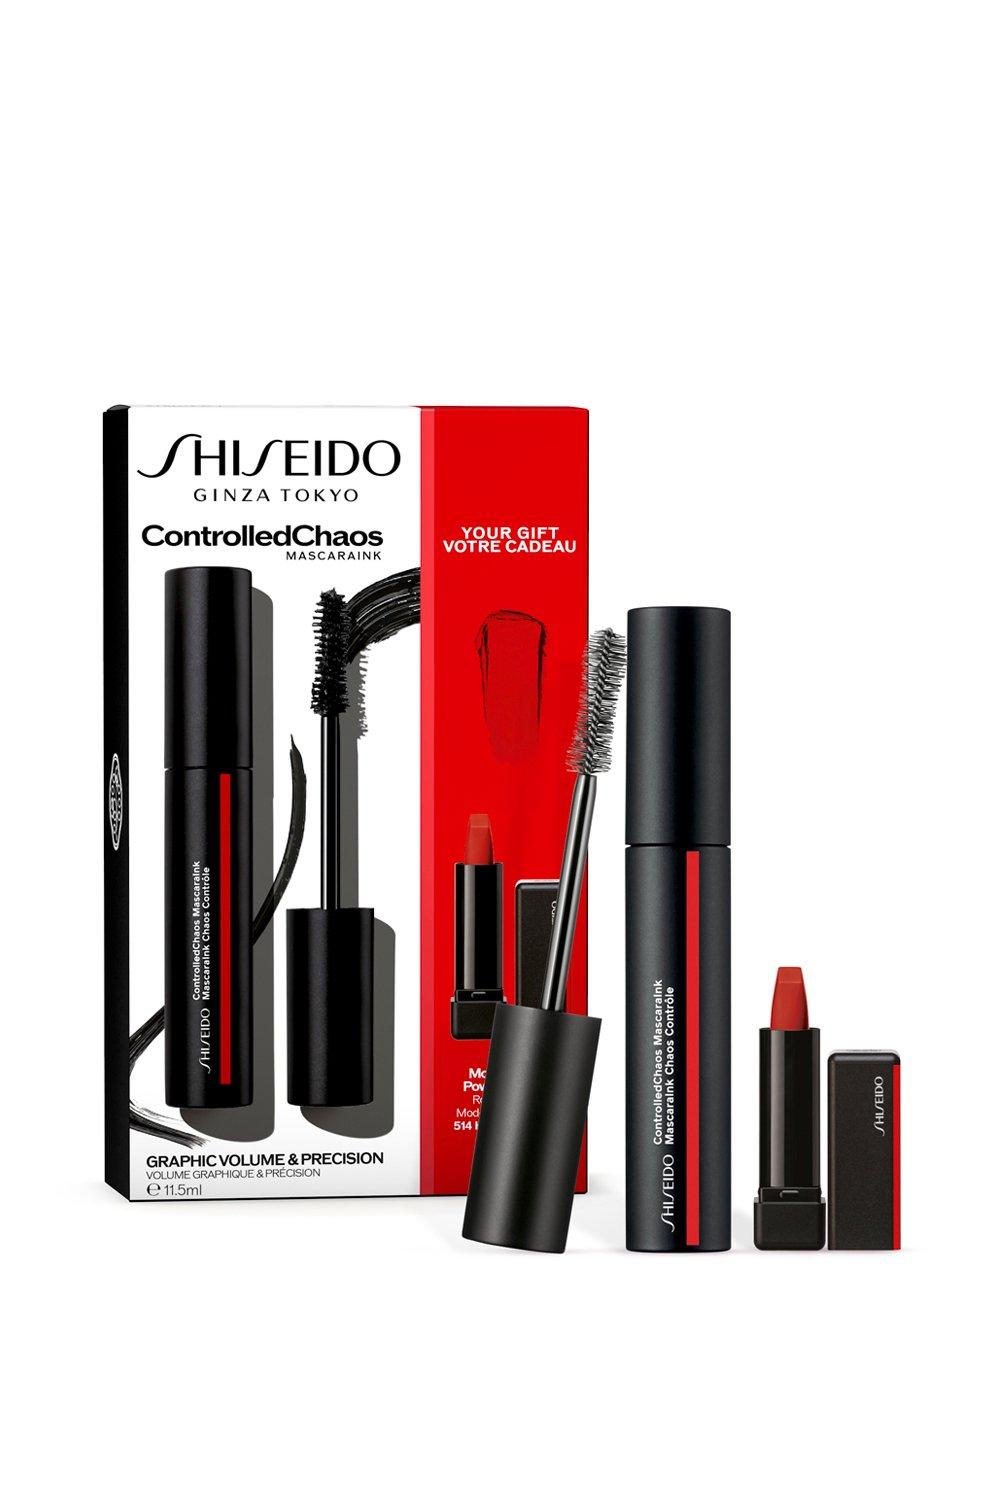 Shiseido Mascara Set